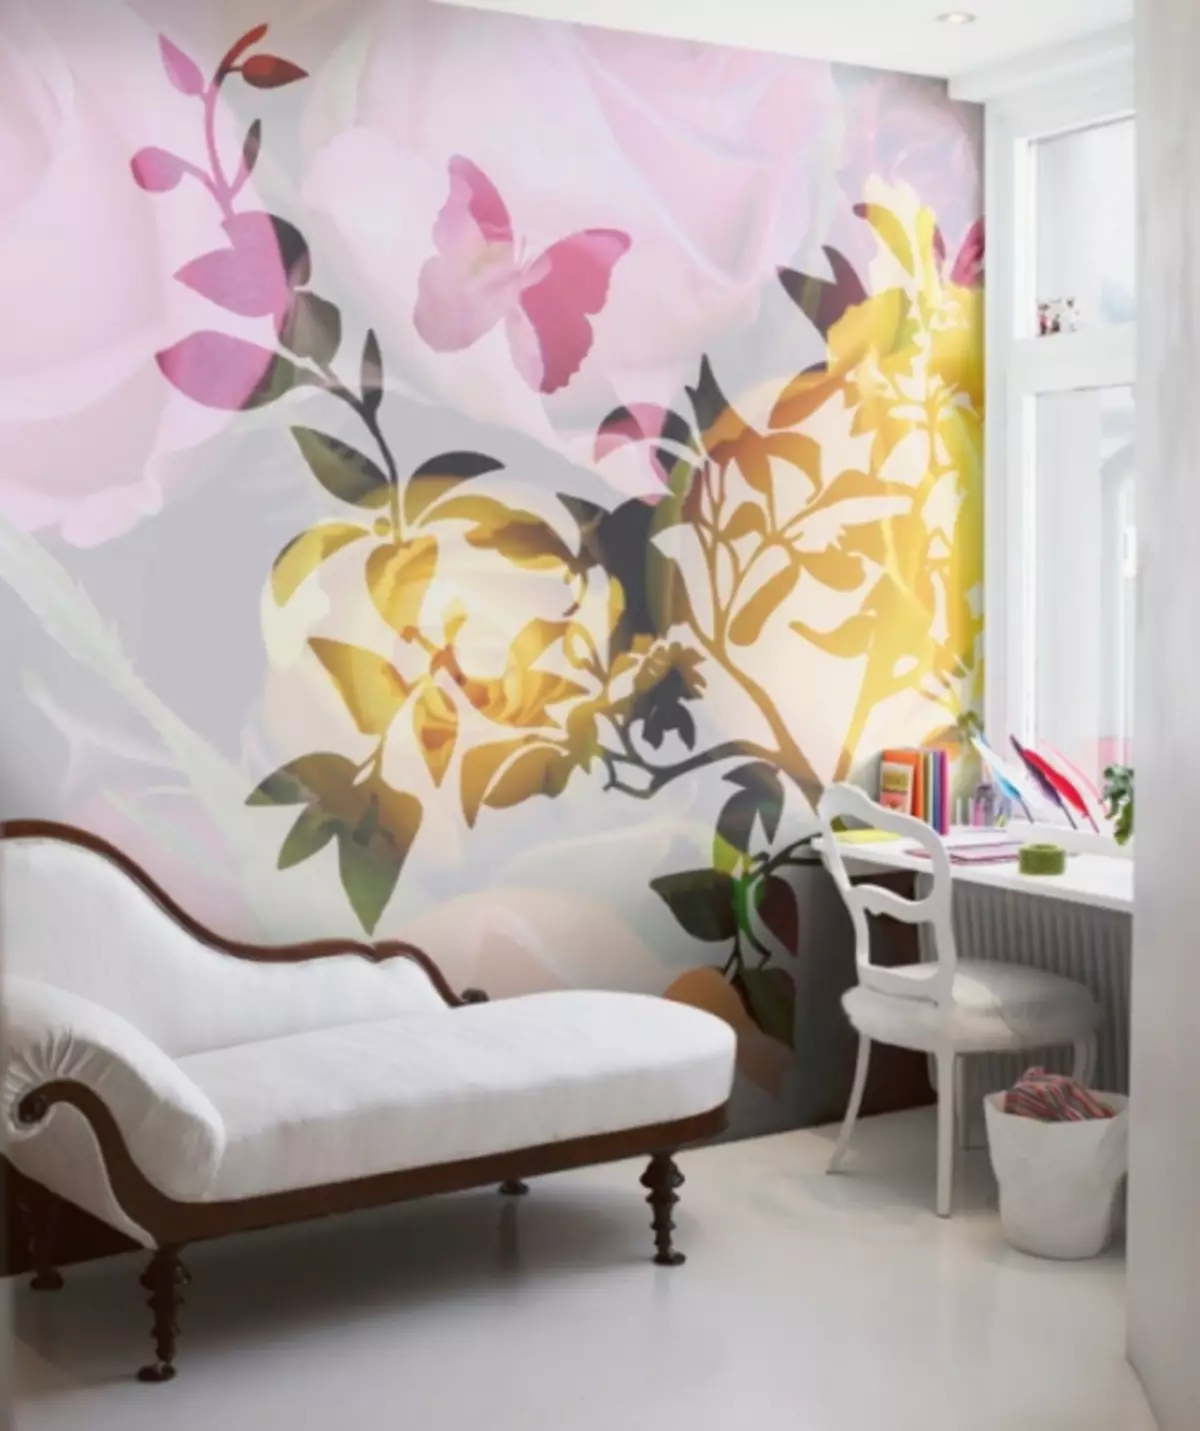 קיר, פרחים, פנים,: 100 תמונות של הדפסים פרחוניים על הקיר